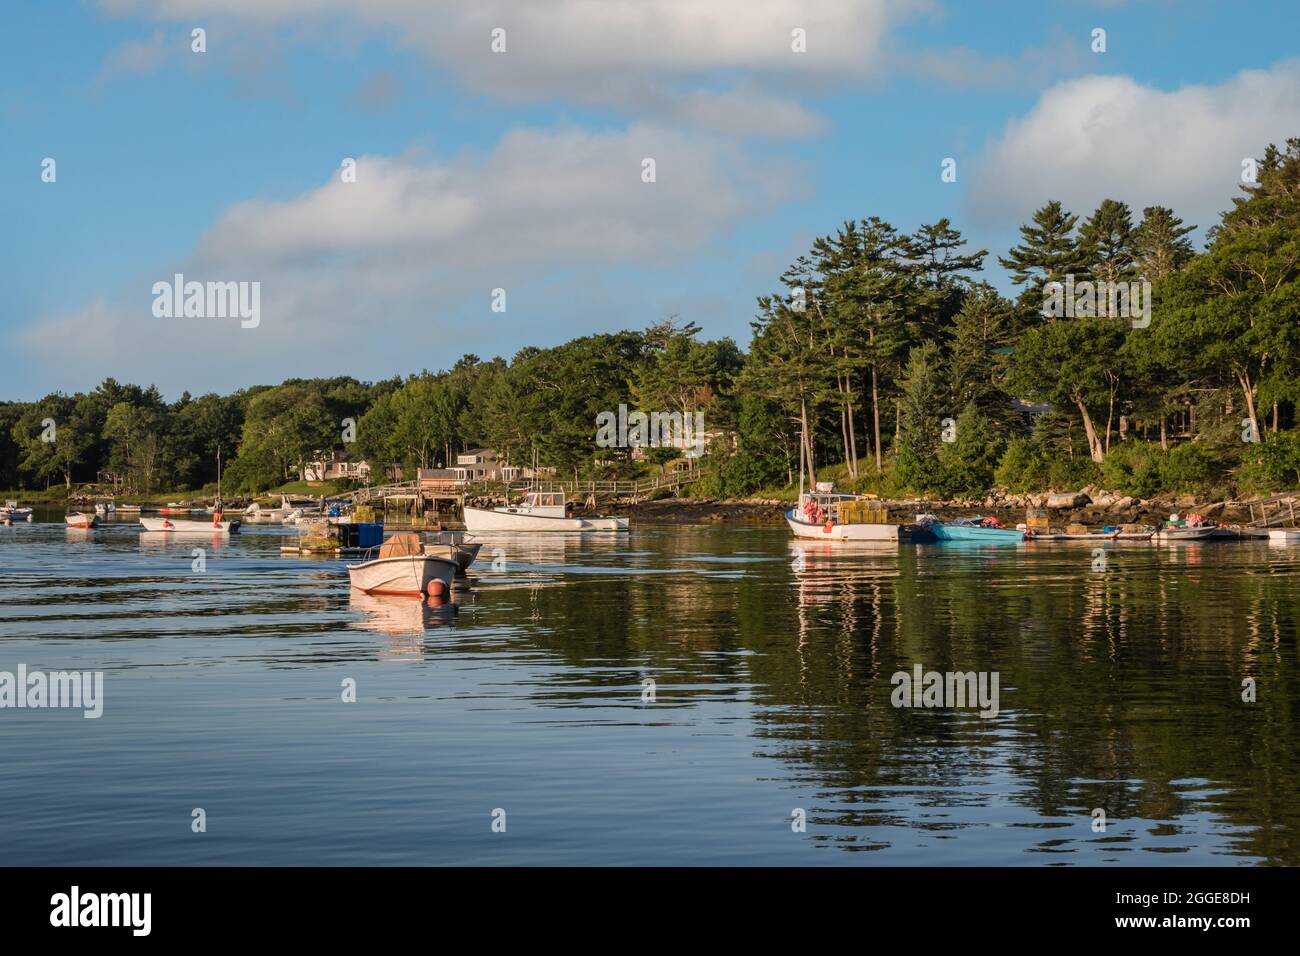 Beautiful shot of boats on the lake Stock Photo - Alamy